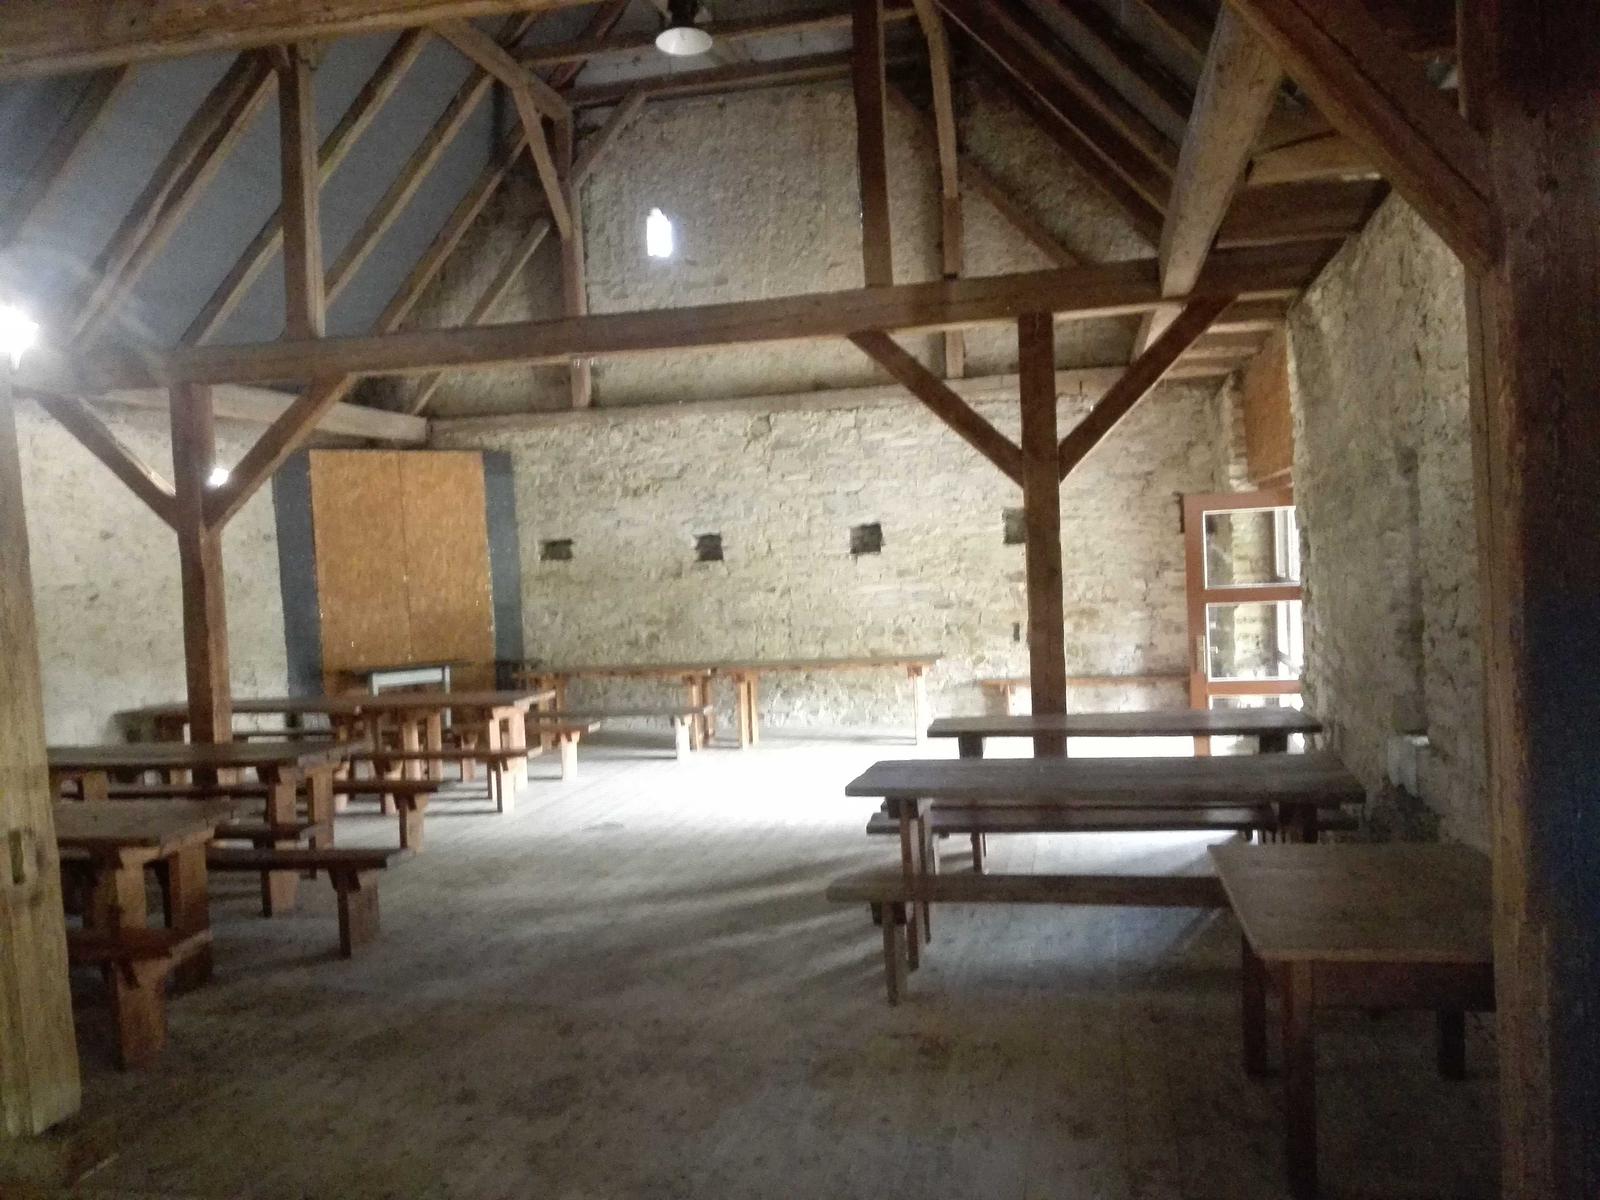 Svatba ve Škvorci - Škvorecký dvůr - stodola uvnitř (prázdná)